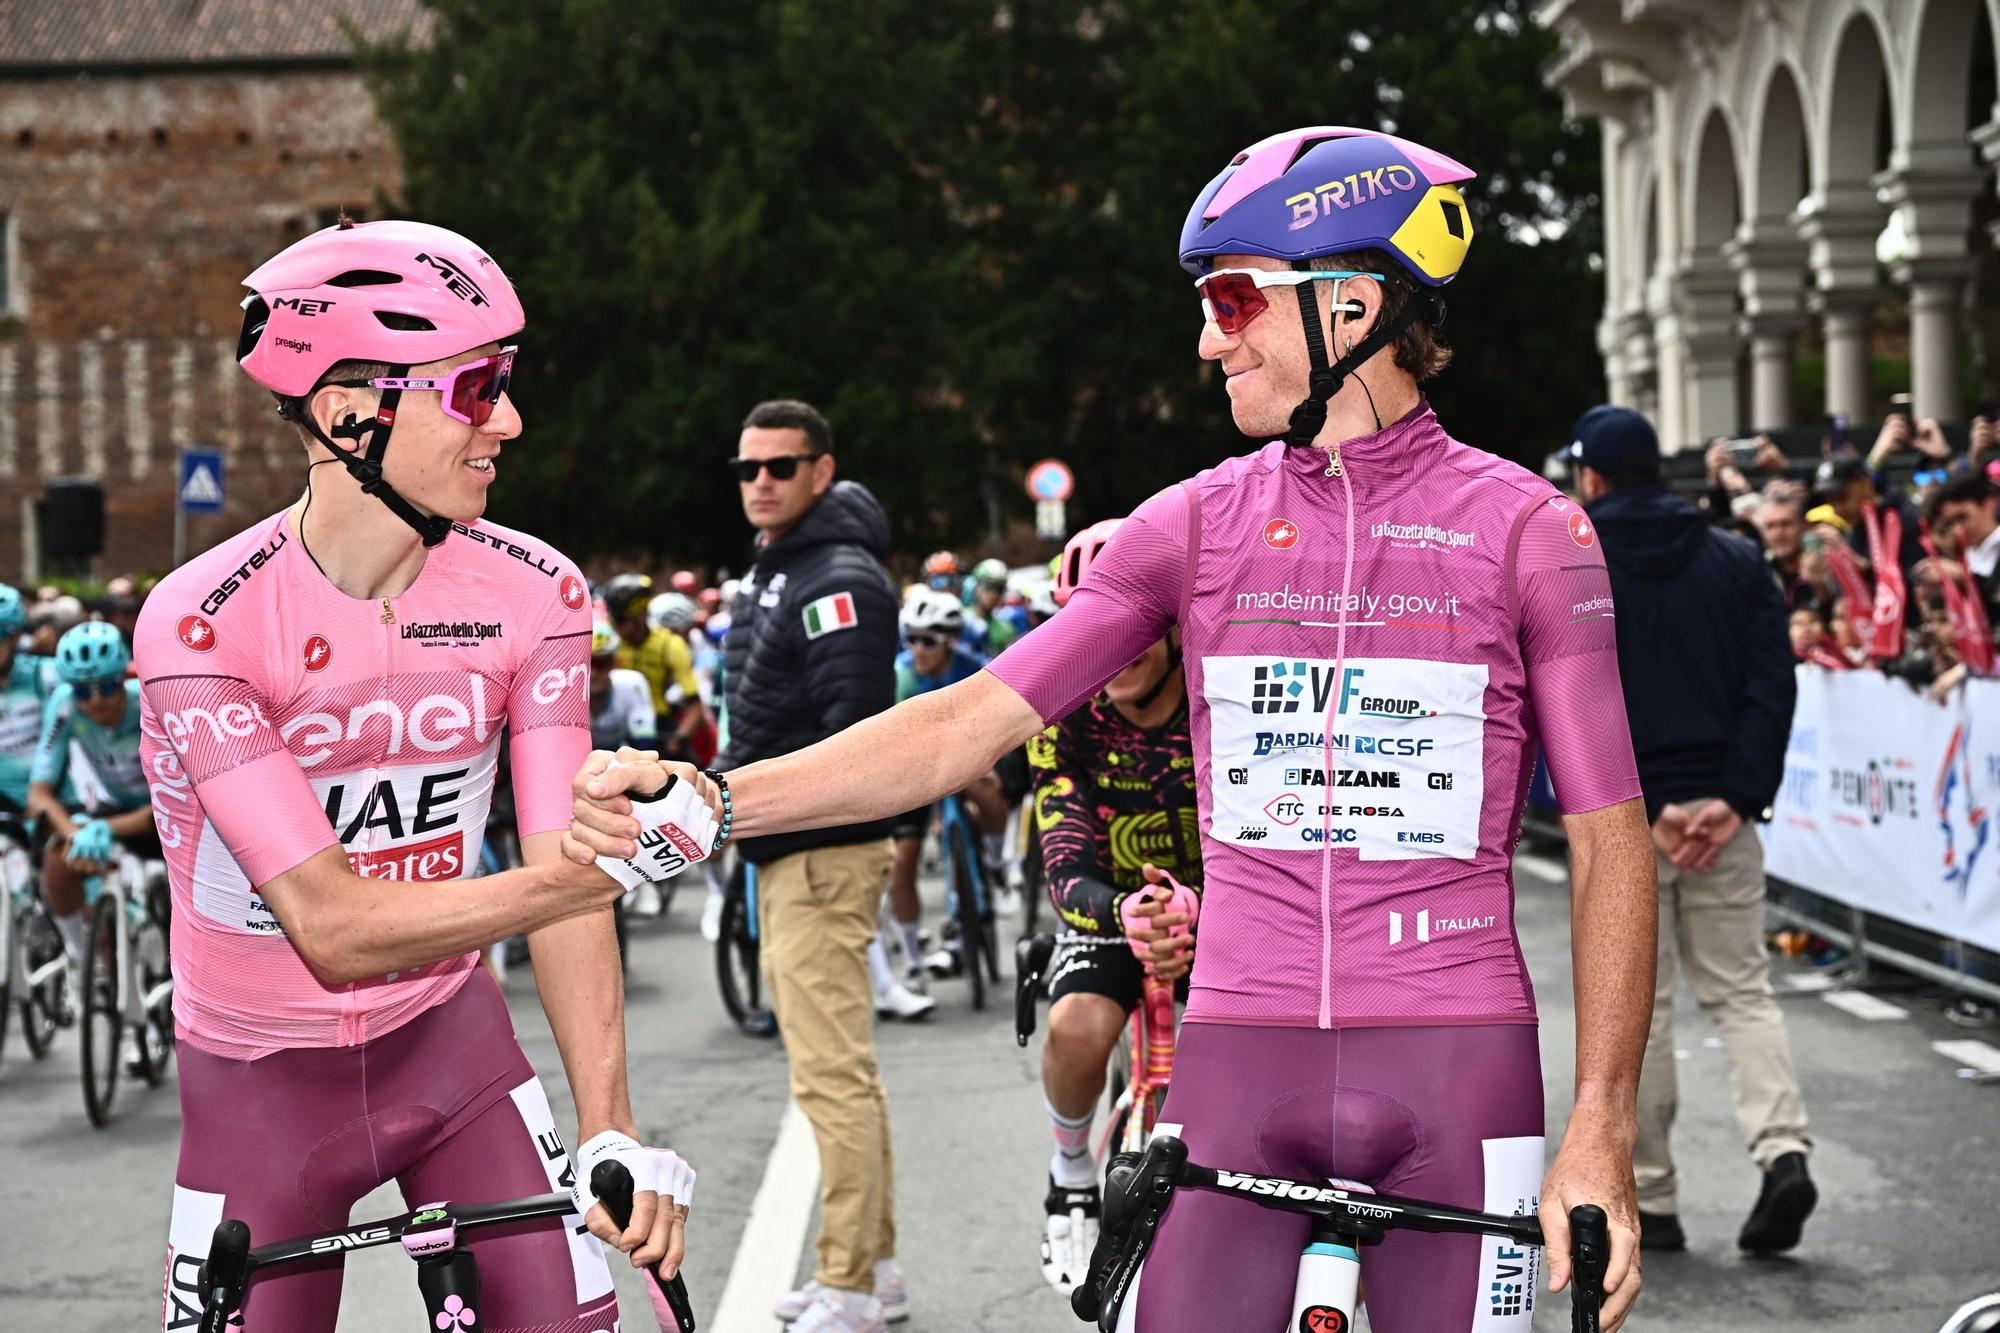 Giro d'Italia cycling tour - Stage 3